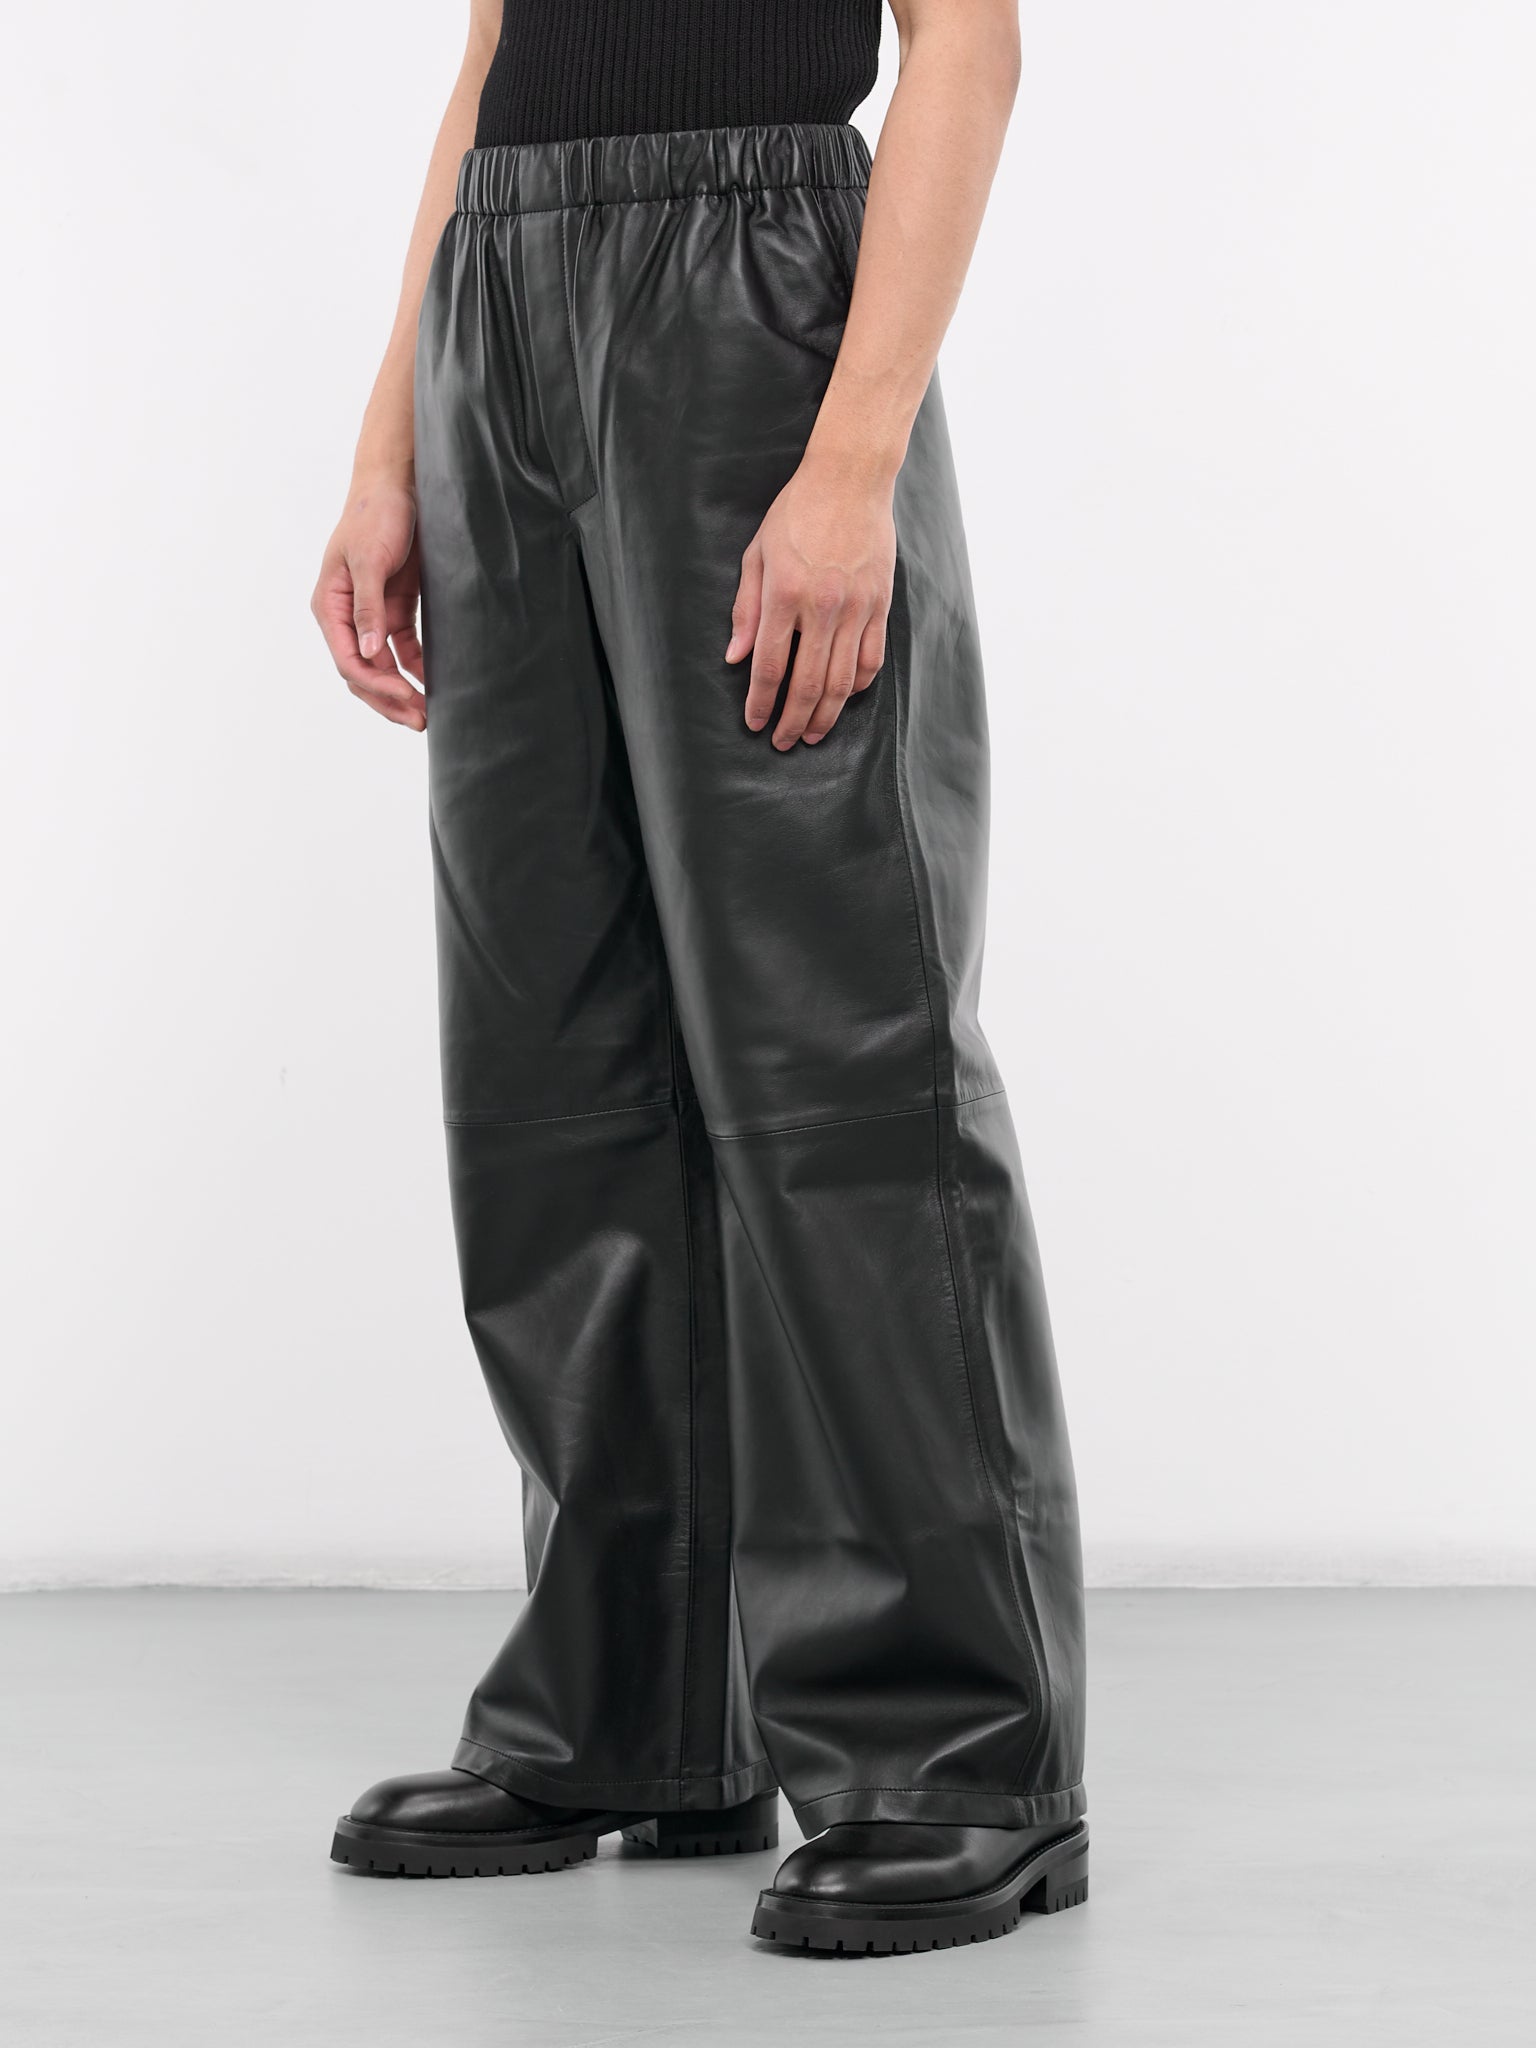 Leather Boxer Pants (CO-PT006-M-LEA001-BLACK)